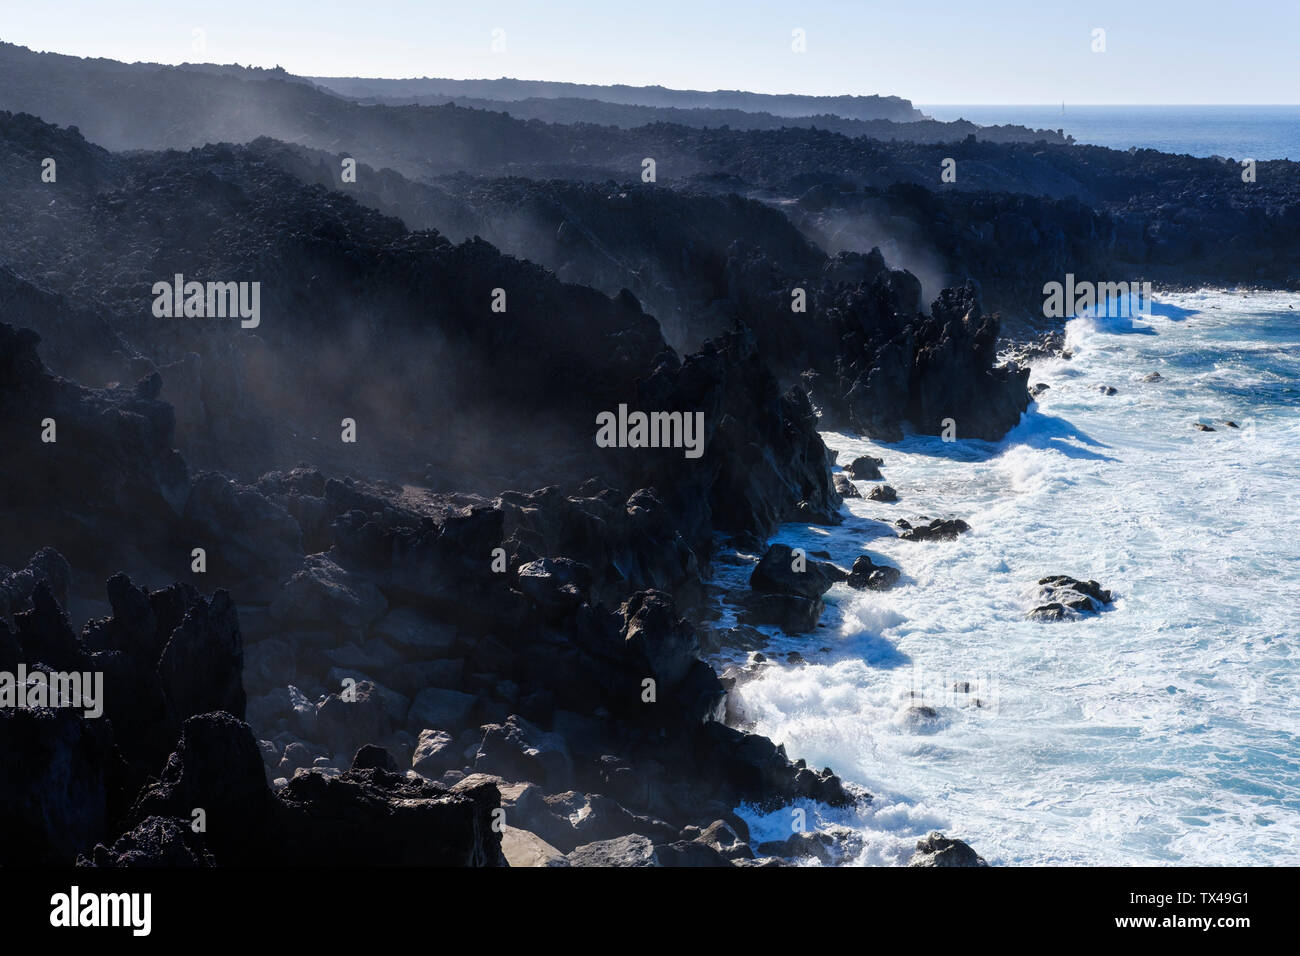 Spain, Canary Islands, Lanzarote, Tinajo, Los Volcanos nature park, sea foam at rocky coast Stock Photo